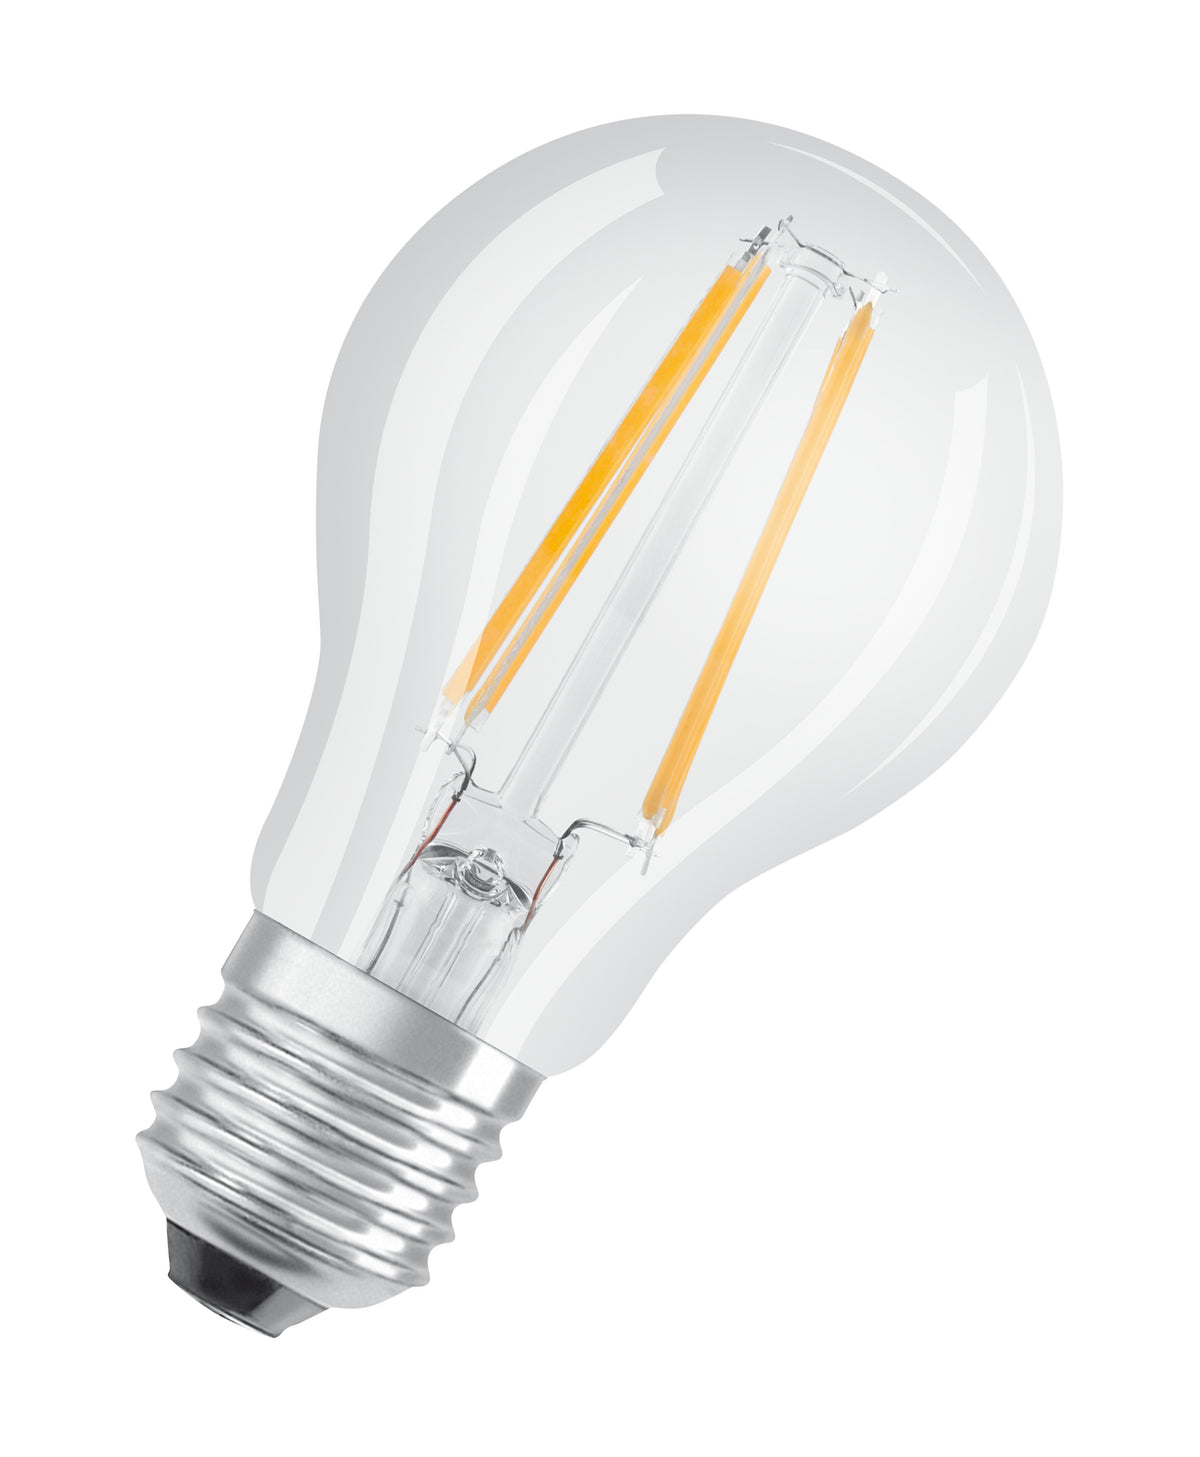 Osram ledlamp Retrofit Classic A Glowdim warm tot extra warm wit E27 4W